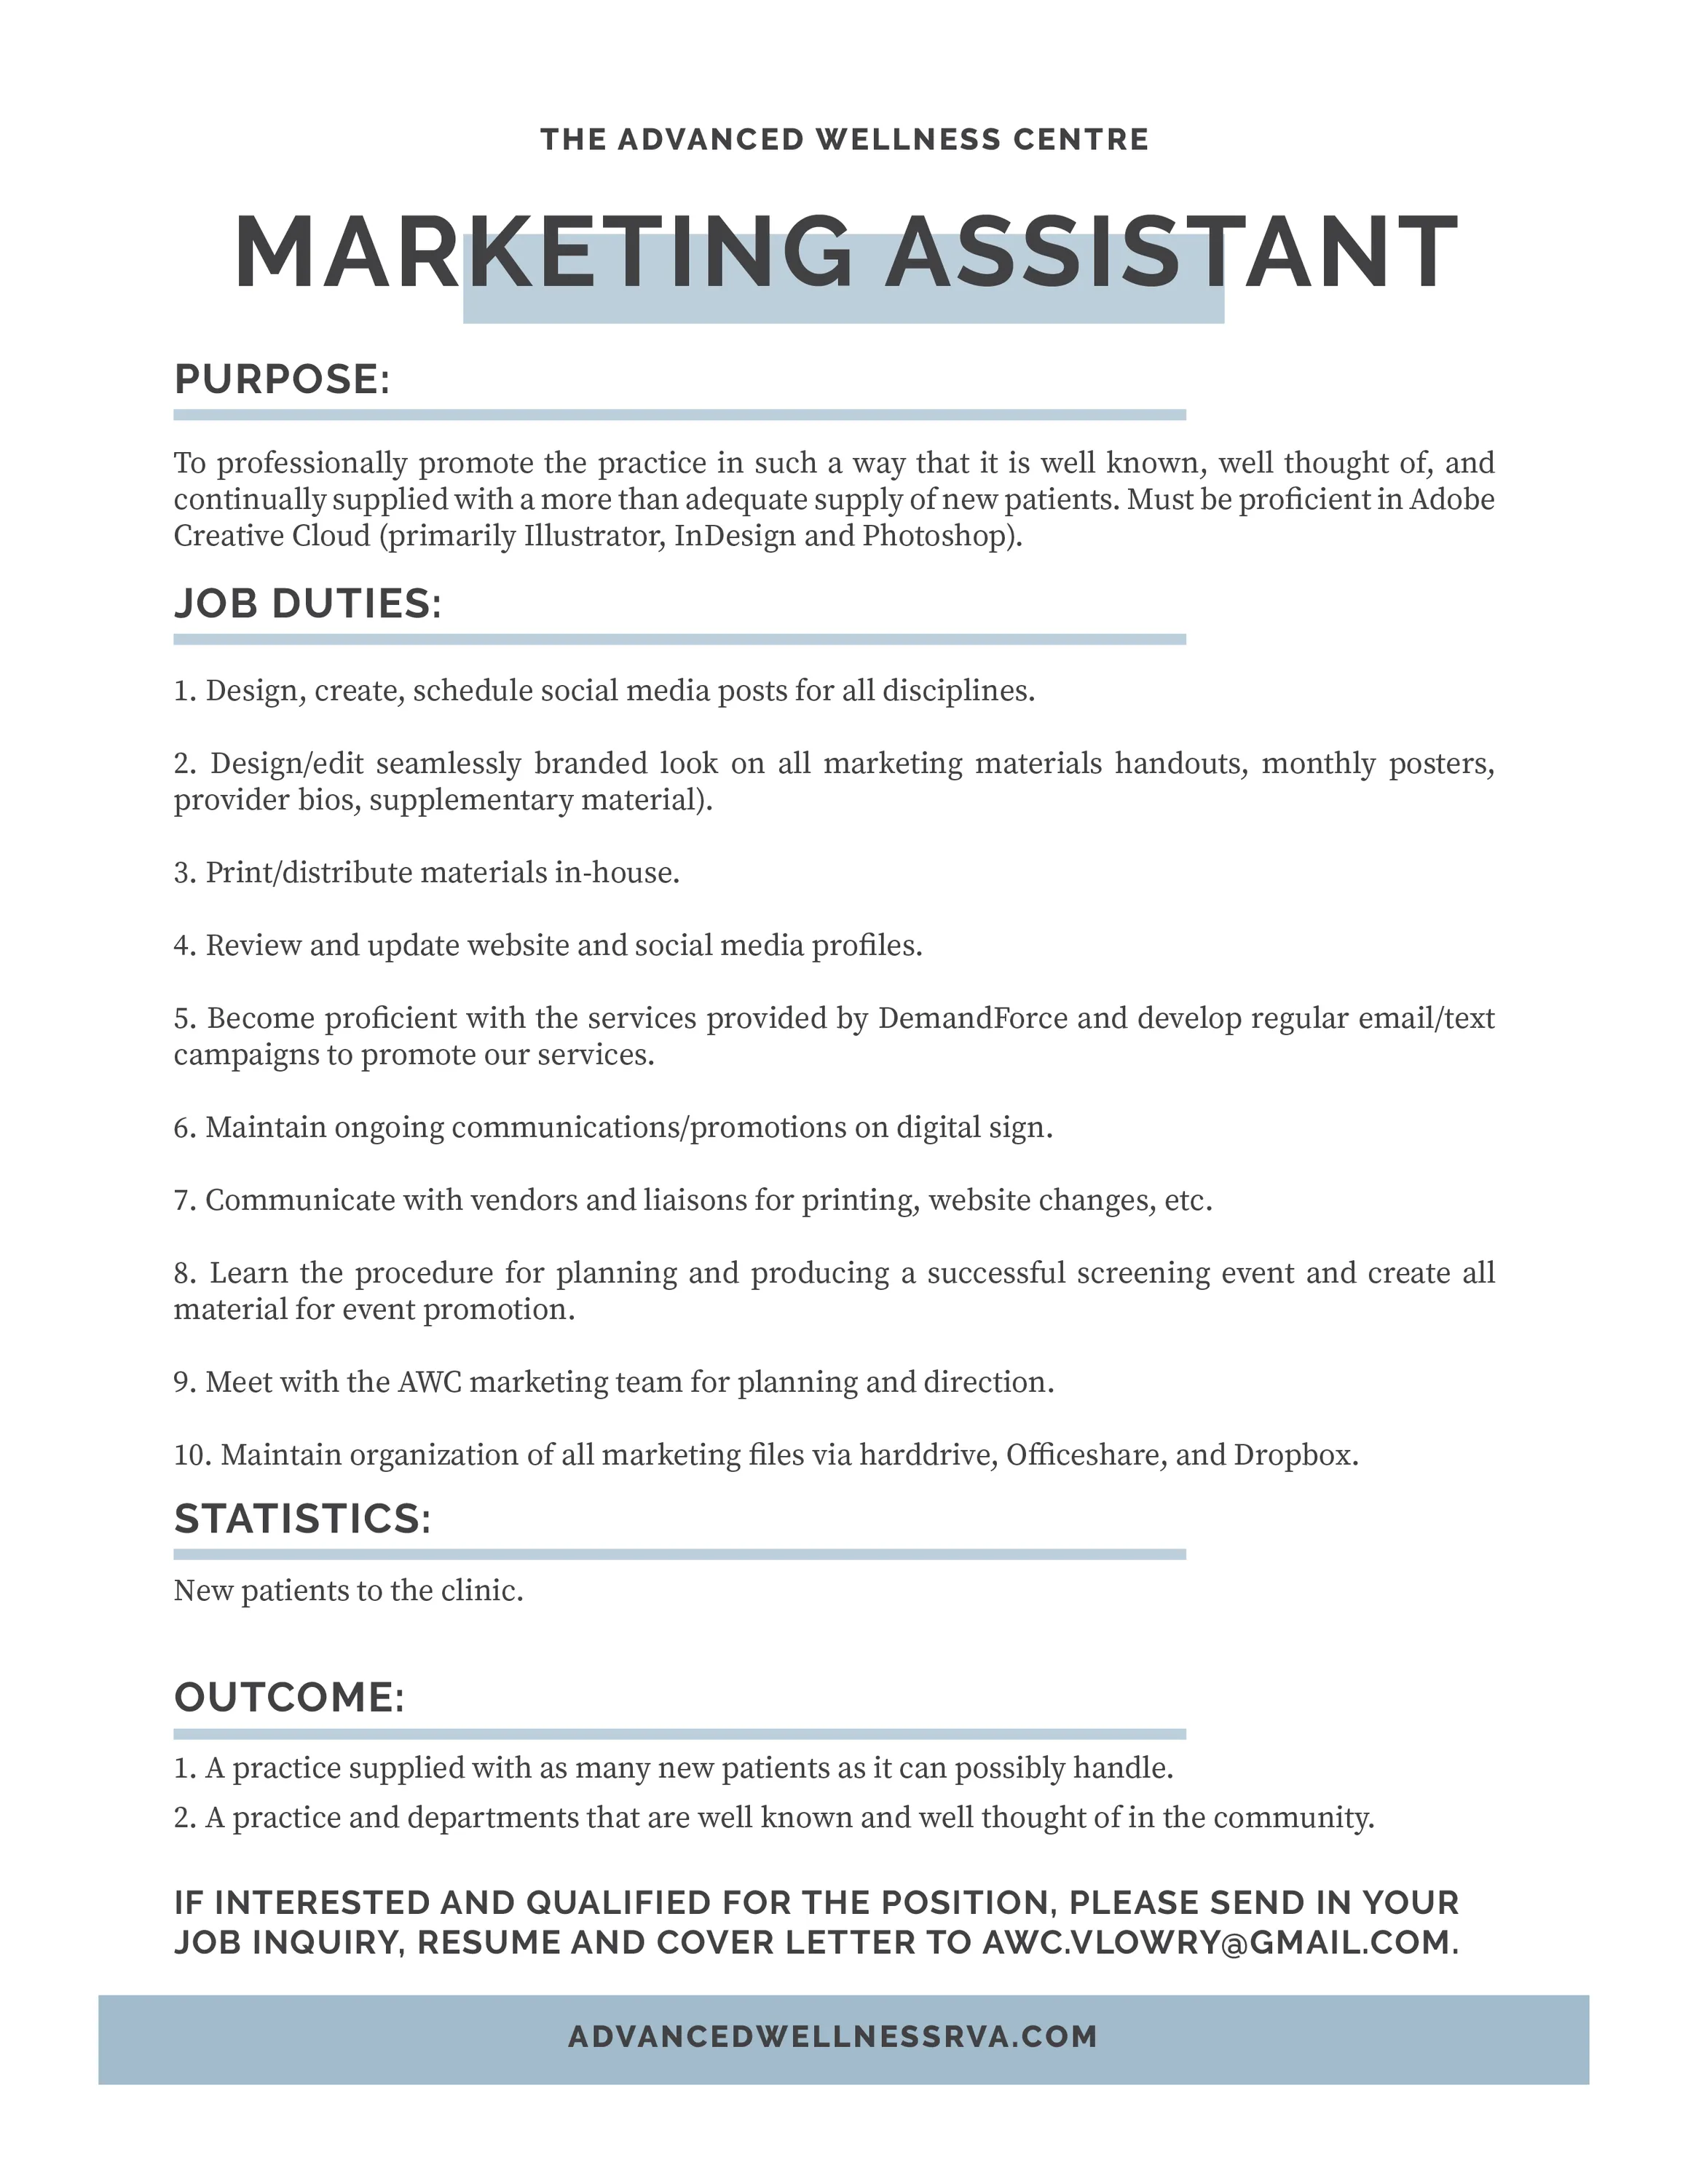 Marketing Assistant Job